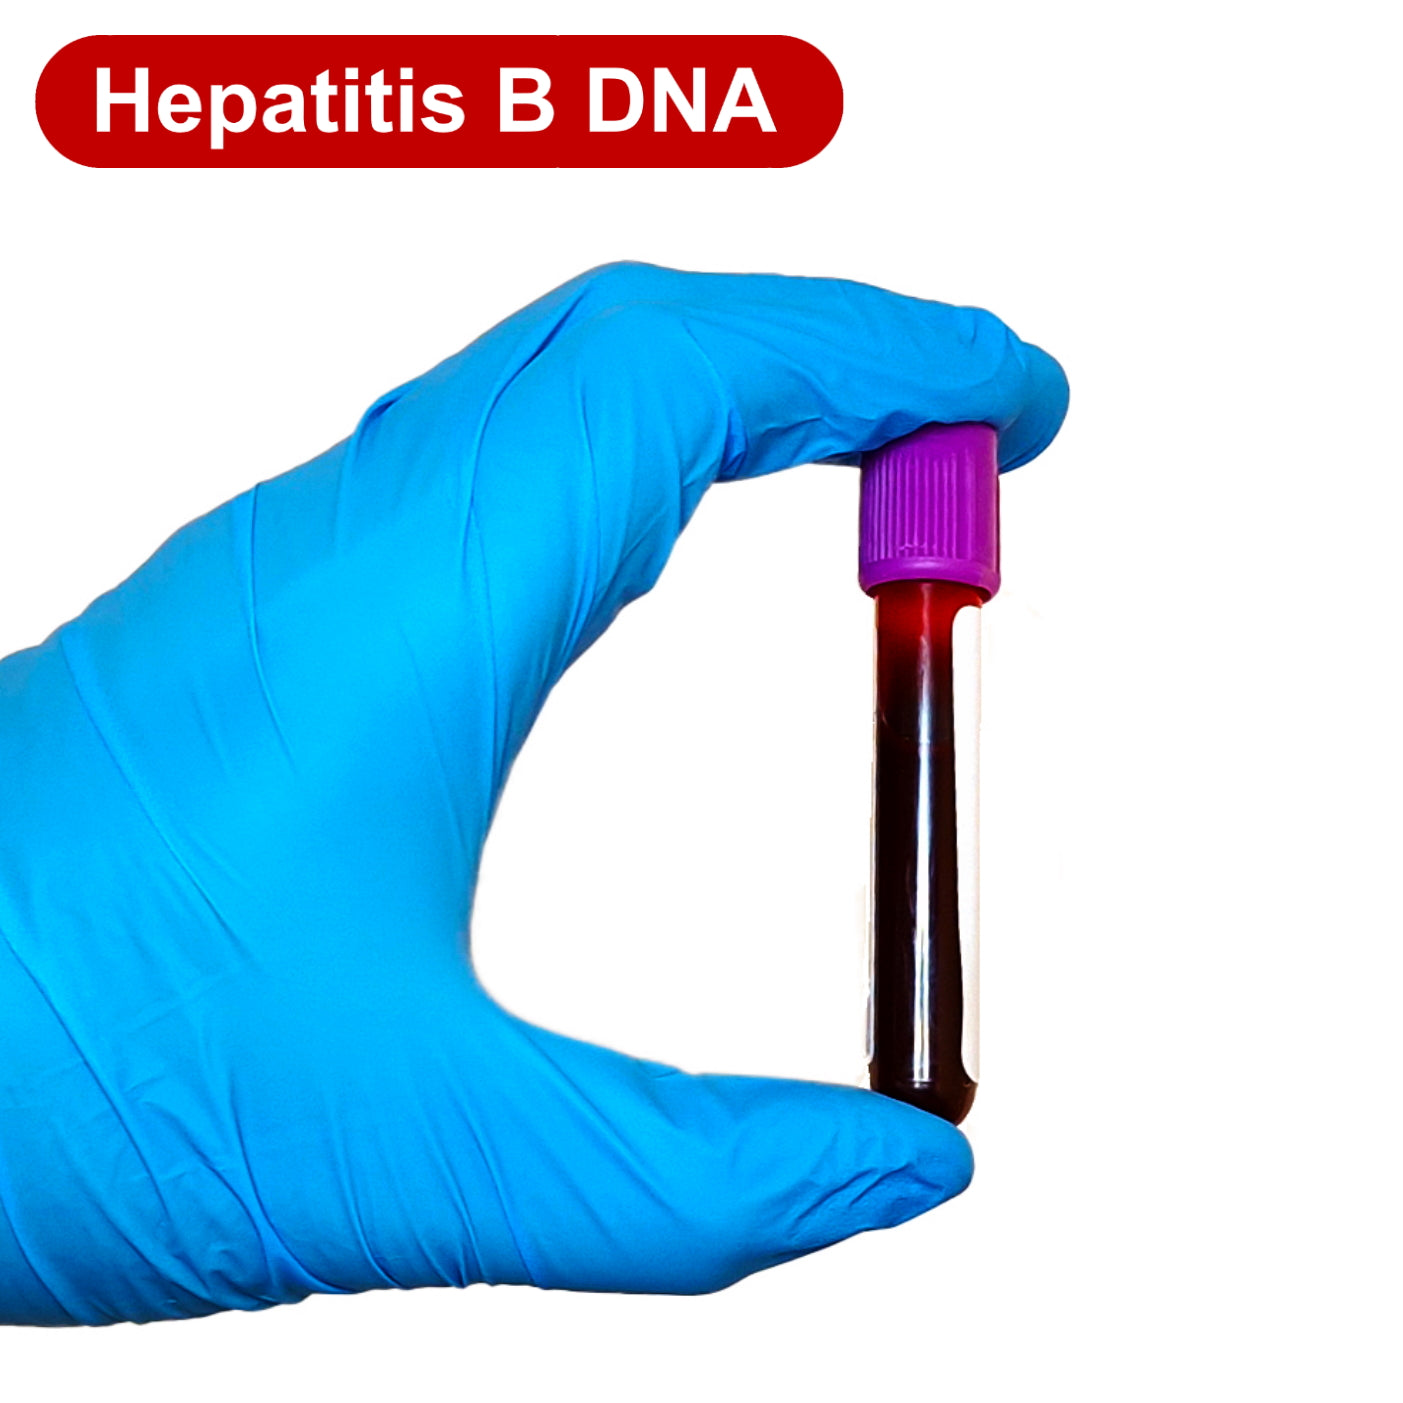 Hepatitis B DNA (Viral load) Blood Test